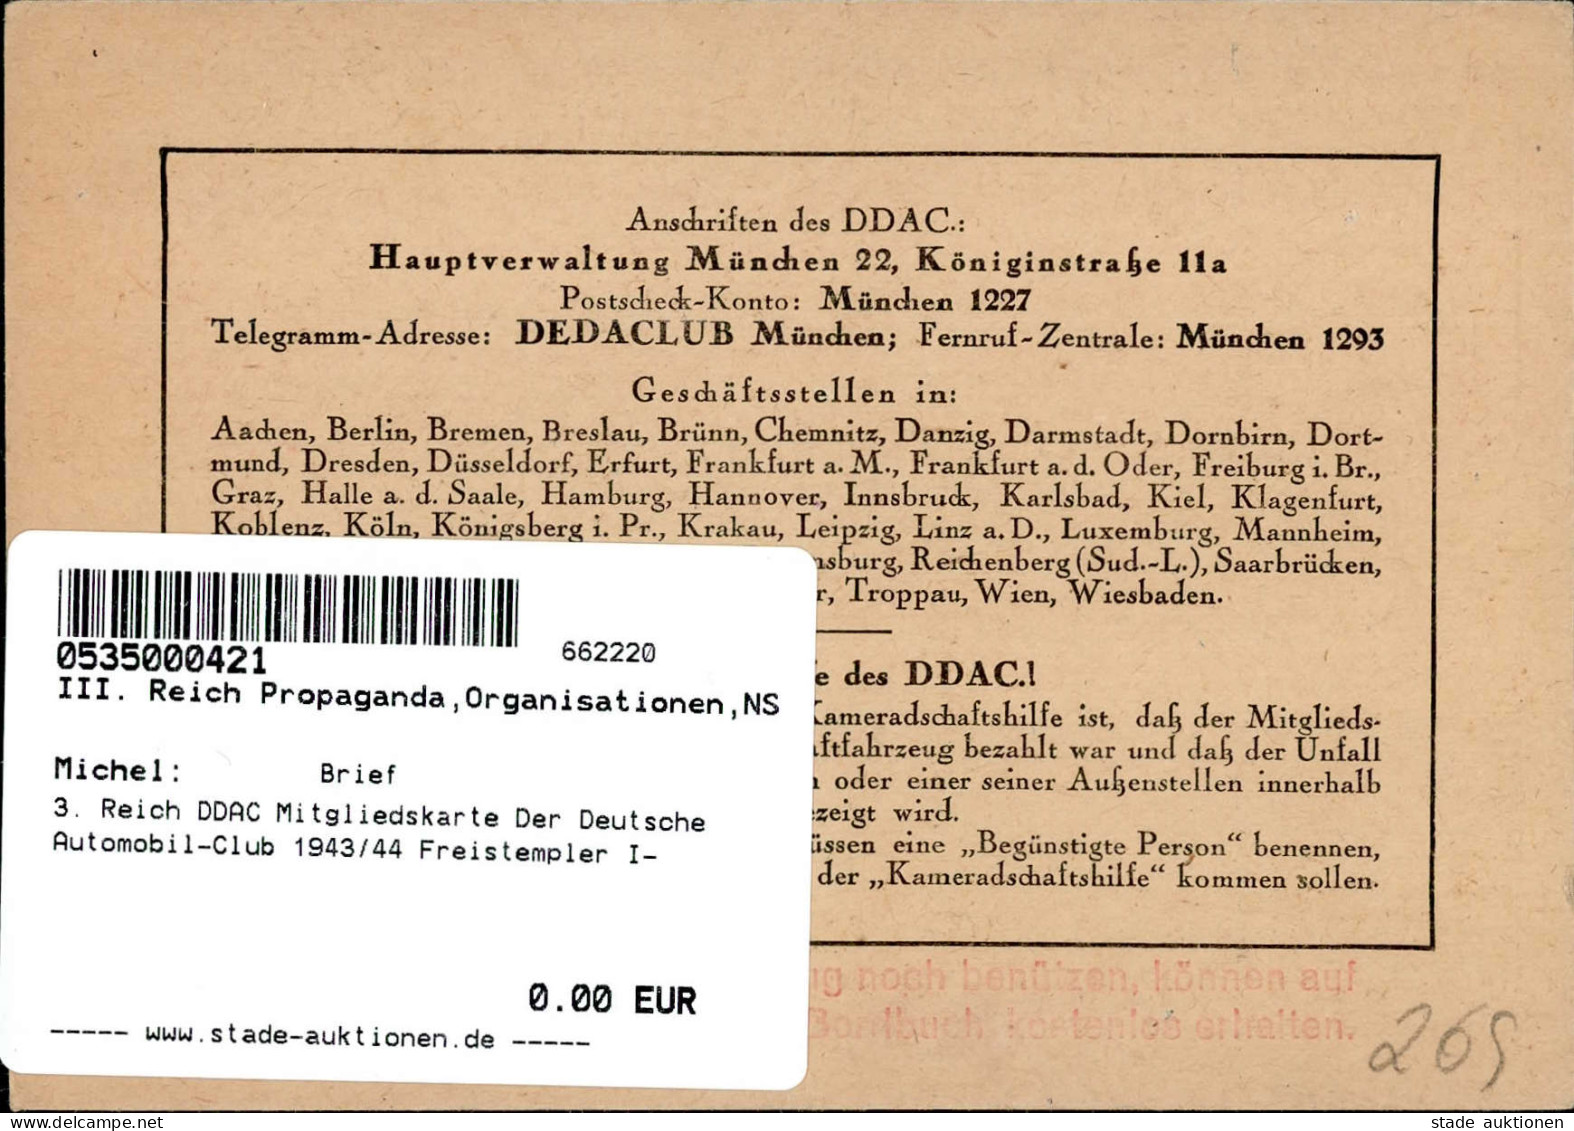 3. Reich DDAC Mitgliedskarte Der Deutsche Automobil-Club 1943/44 Freistempler I- - Guerre 1939-45